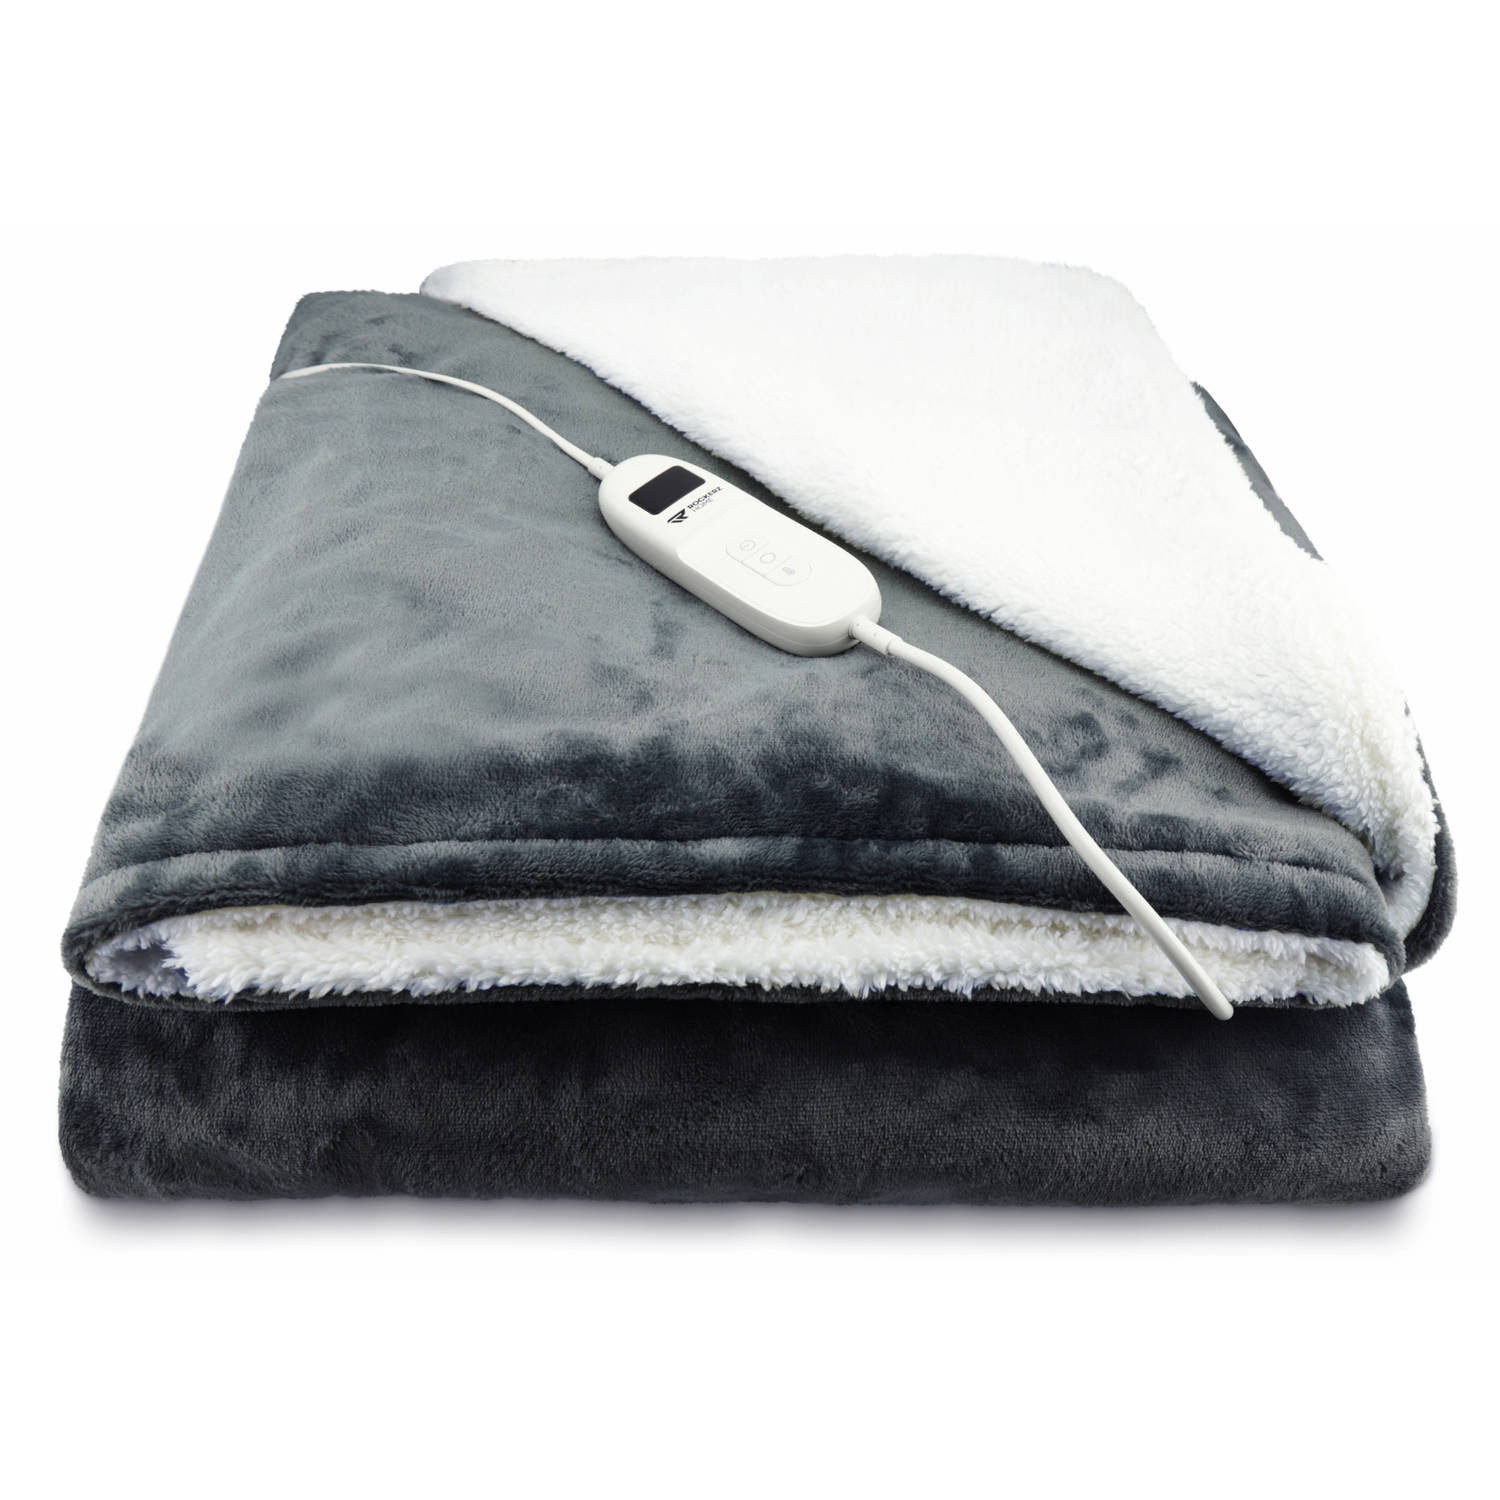 Elektrische deken - Dé musthave voor de koude dagen - Elektrische bovendeken - formaat (160x130 cm) 1 Persoons - 9 warmtestanden - Automatisch uitschakelen tussen 1-12 uur - Energi